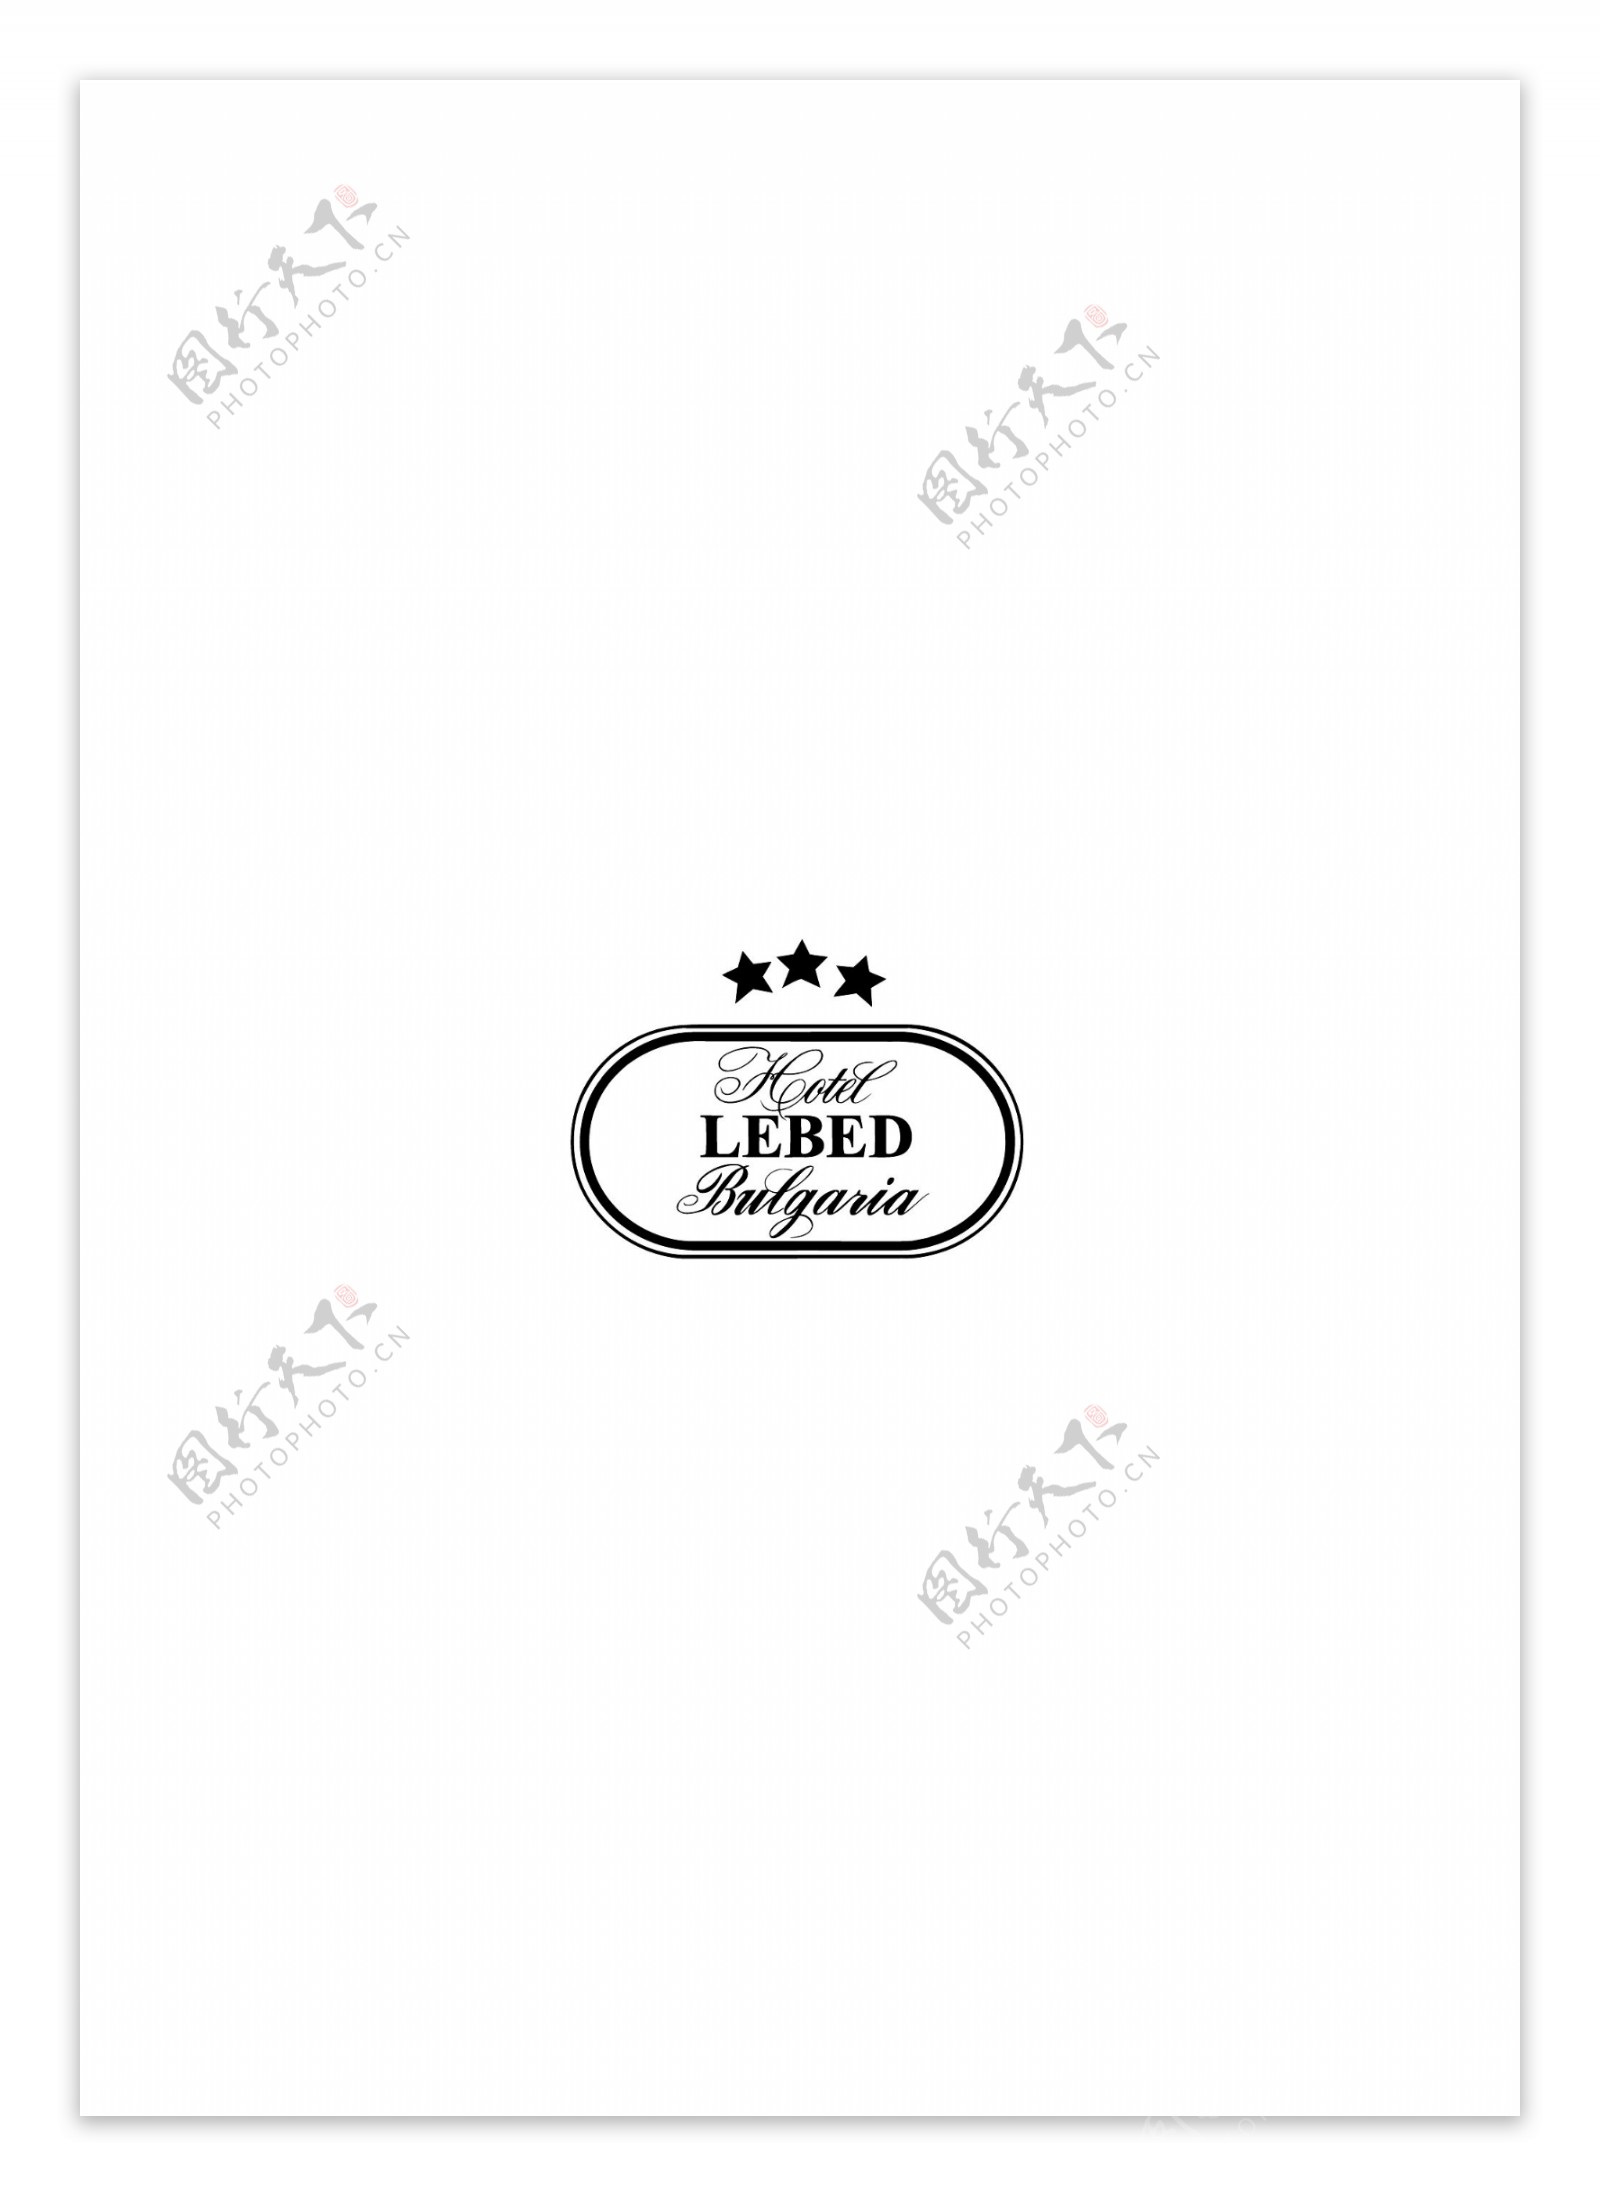 LebedHotellogo设计欣赏LebedHotel著名酒店LOGO下载标志设计欣赏